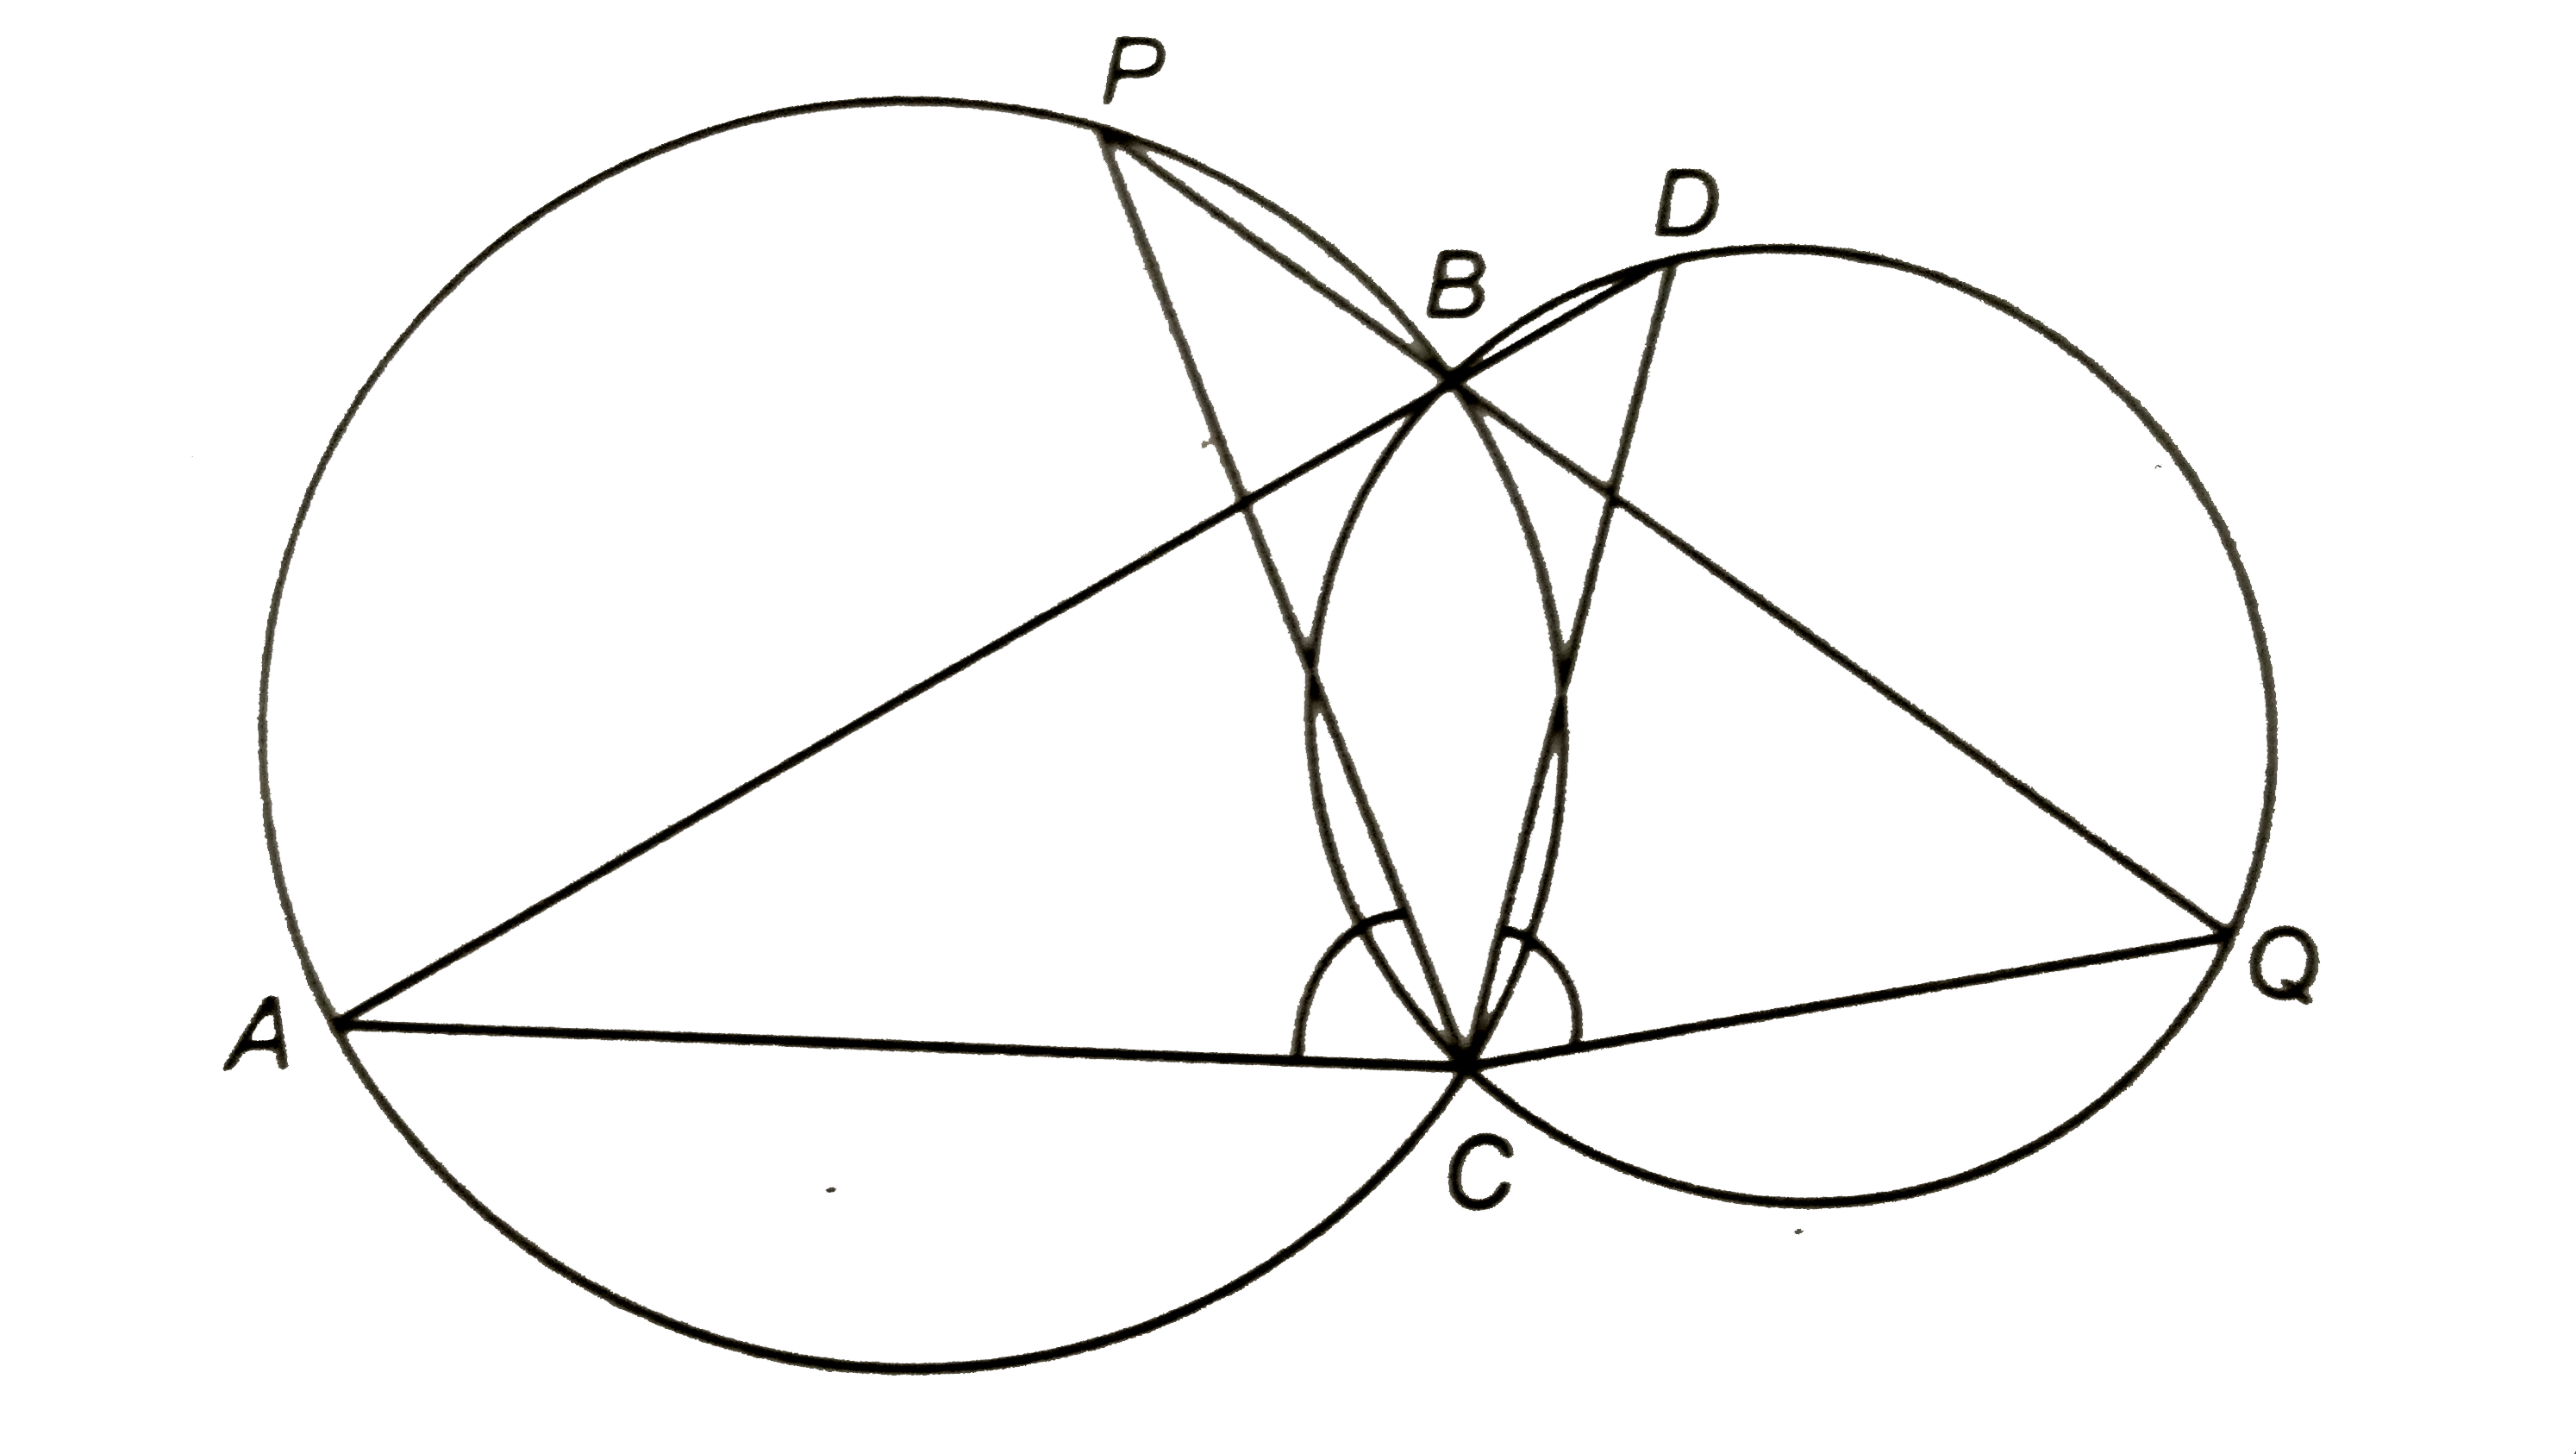 दो वृत्त दो बिन्दुओं B और C पर प्रतिच्छेद करते हैं | B से होने वाले दो रेखाखण्ड ABD और PBQ वृत्तों को A, D और P, Q पर क्रमश: प्रतिच्छेद करते हुए खींचे गए हैं (आकृति देखिए) | सिद्ध कीजिए कि angleACP=angleQCD है |